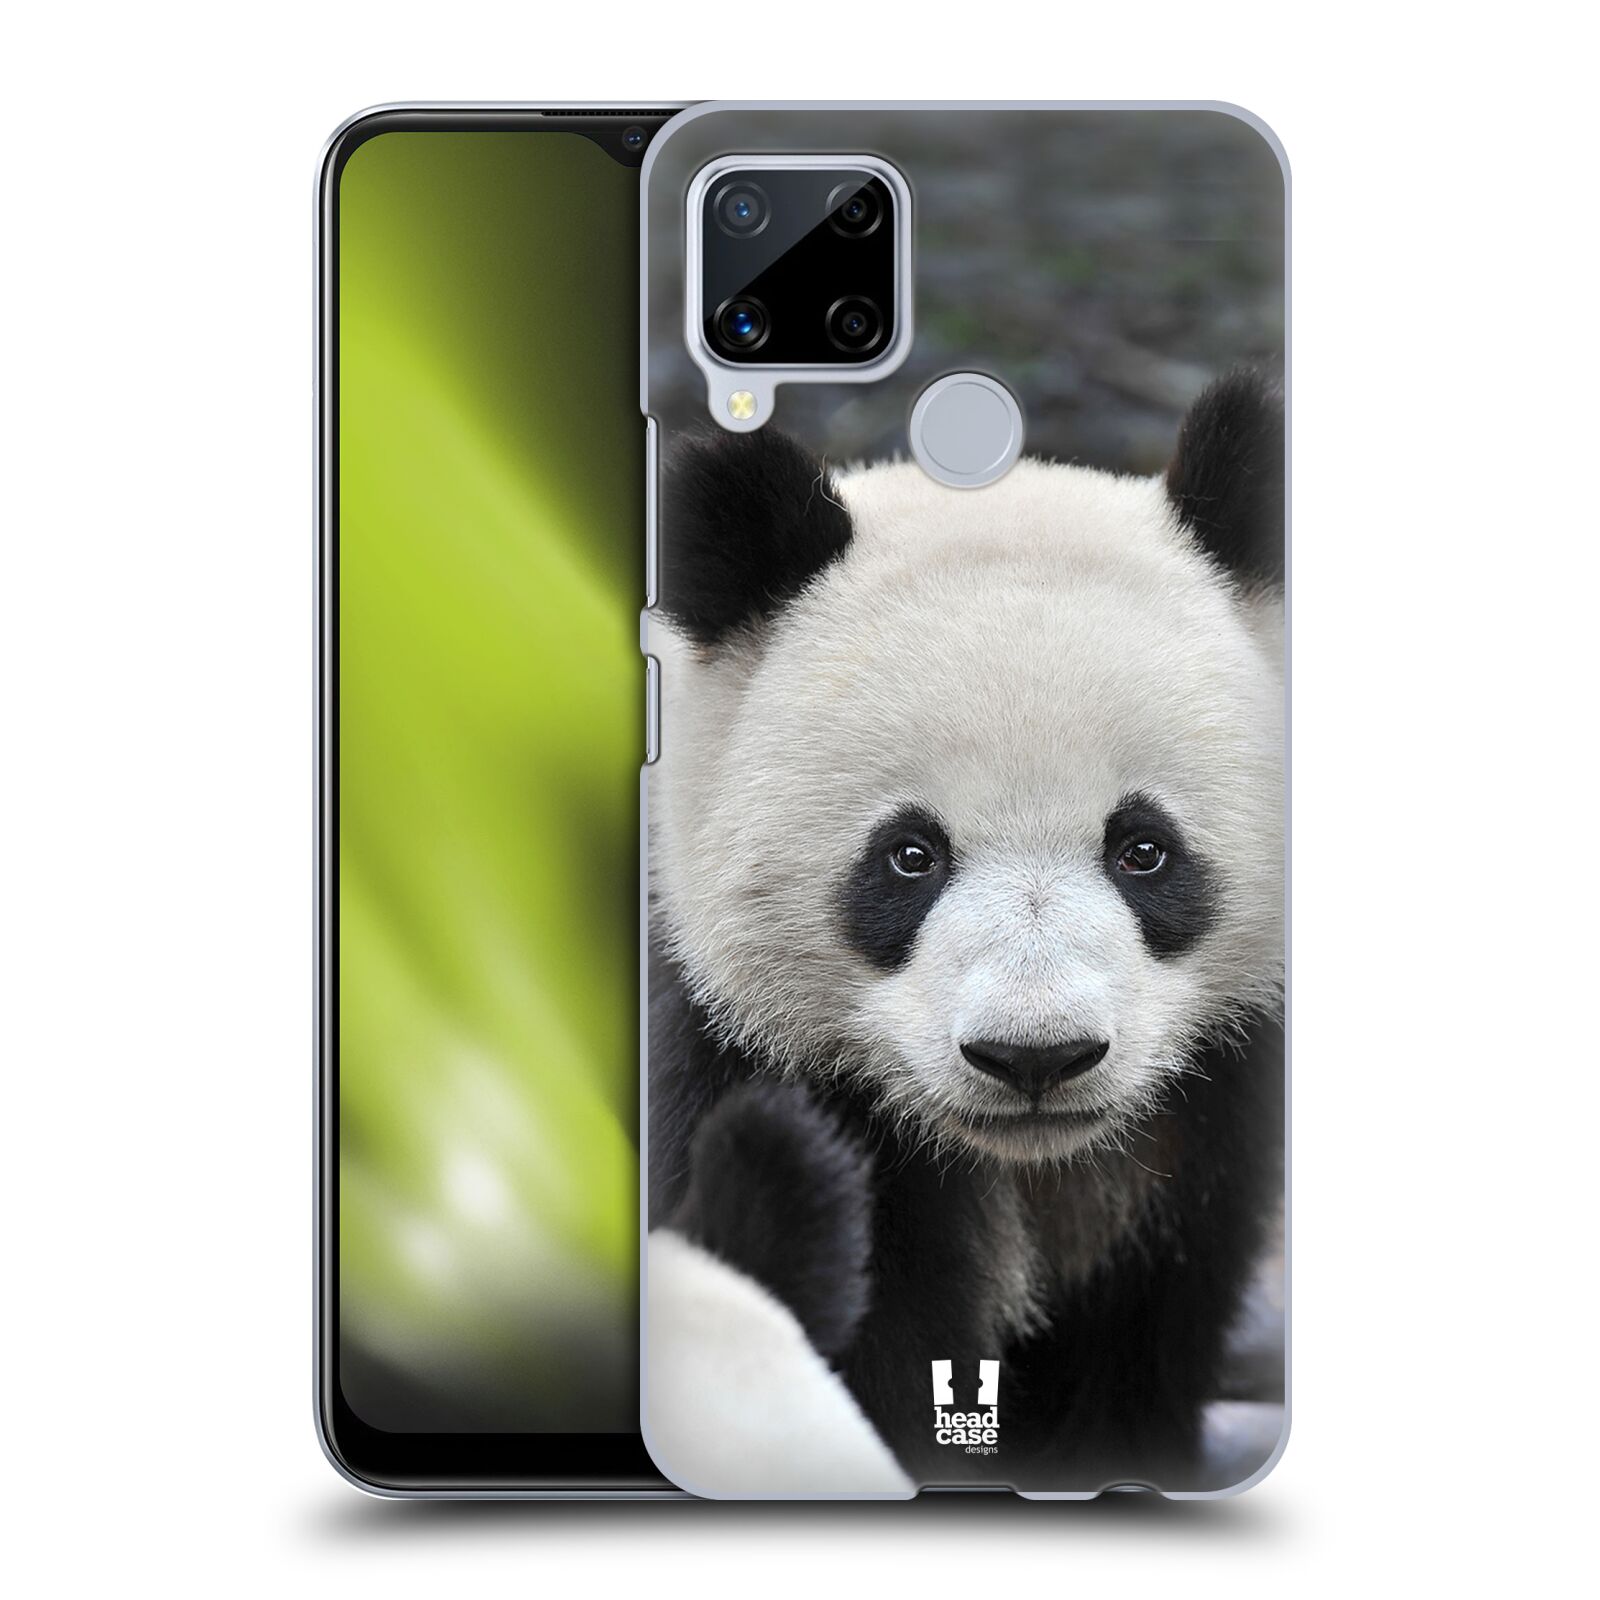 Zadní obal pro mobil Realme C15 - HEAD CASE - Svět zvířat medvěd panda